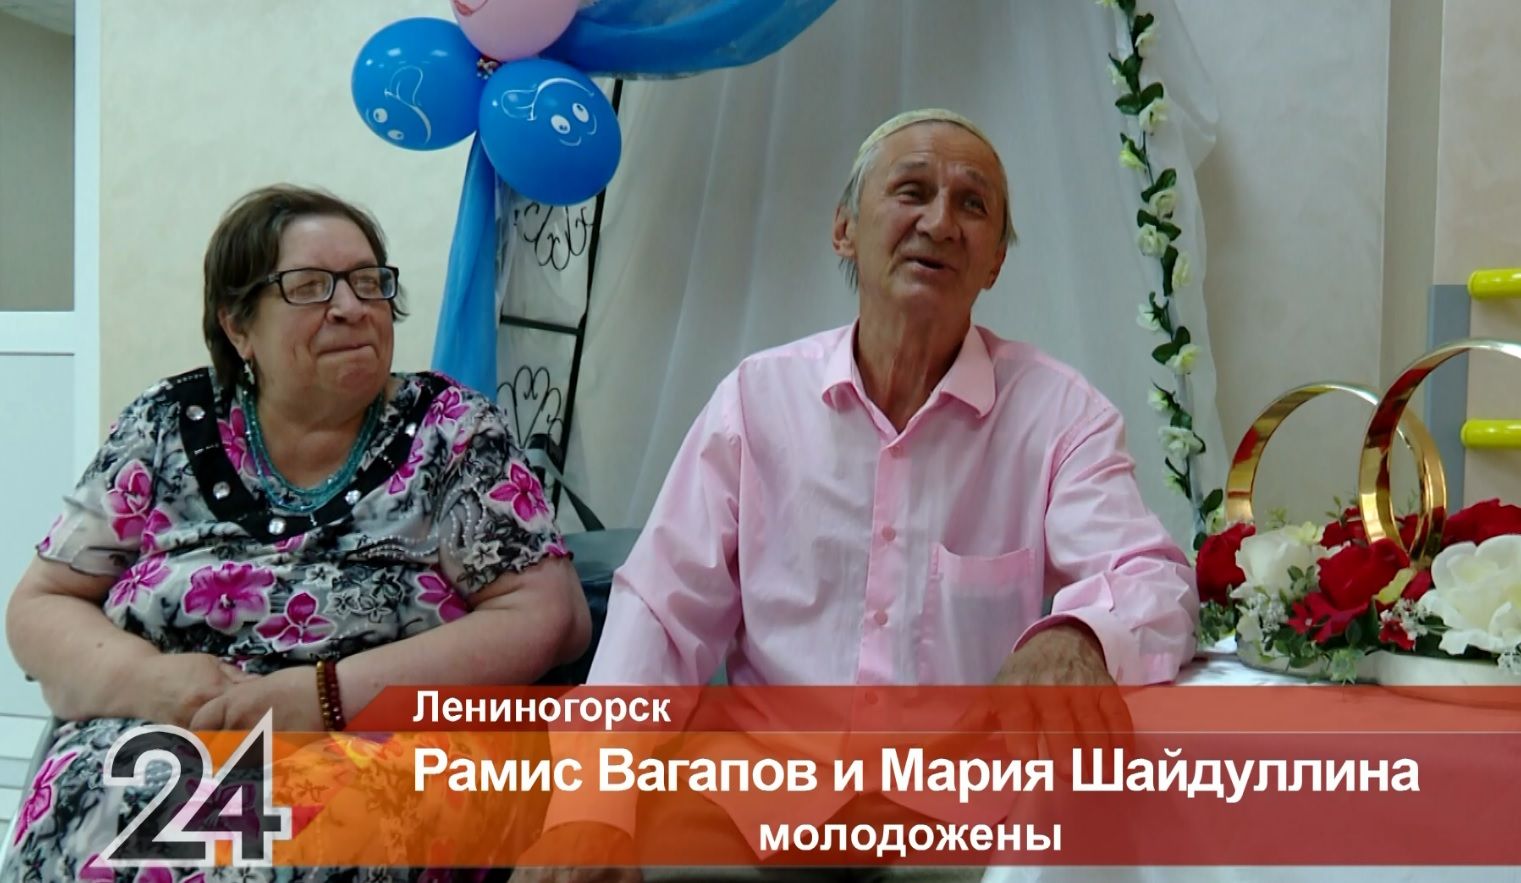 67-летние молодожены зарегистрировали свой брак в Татарстане